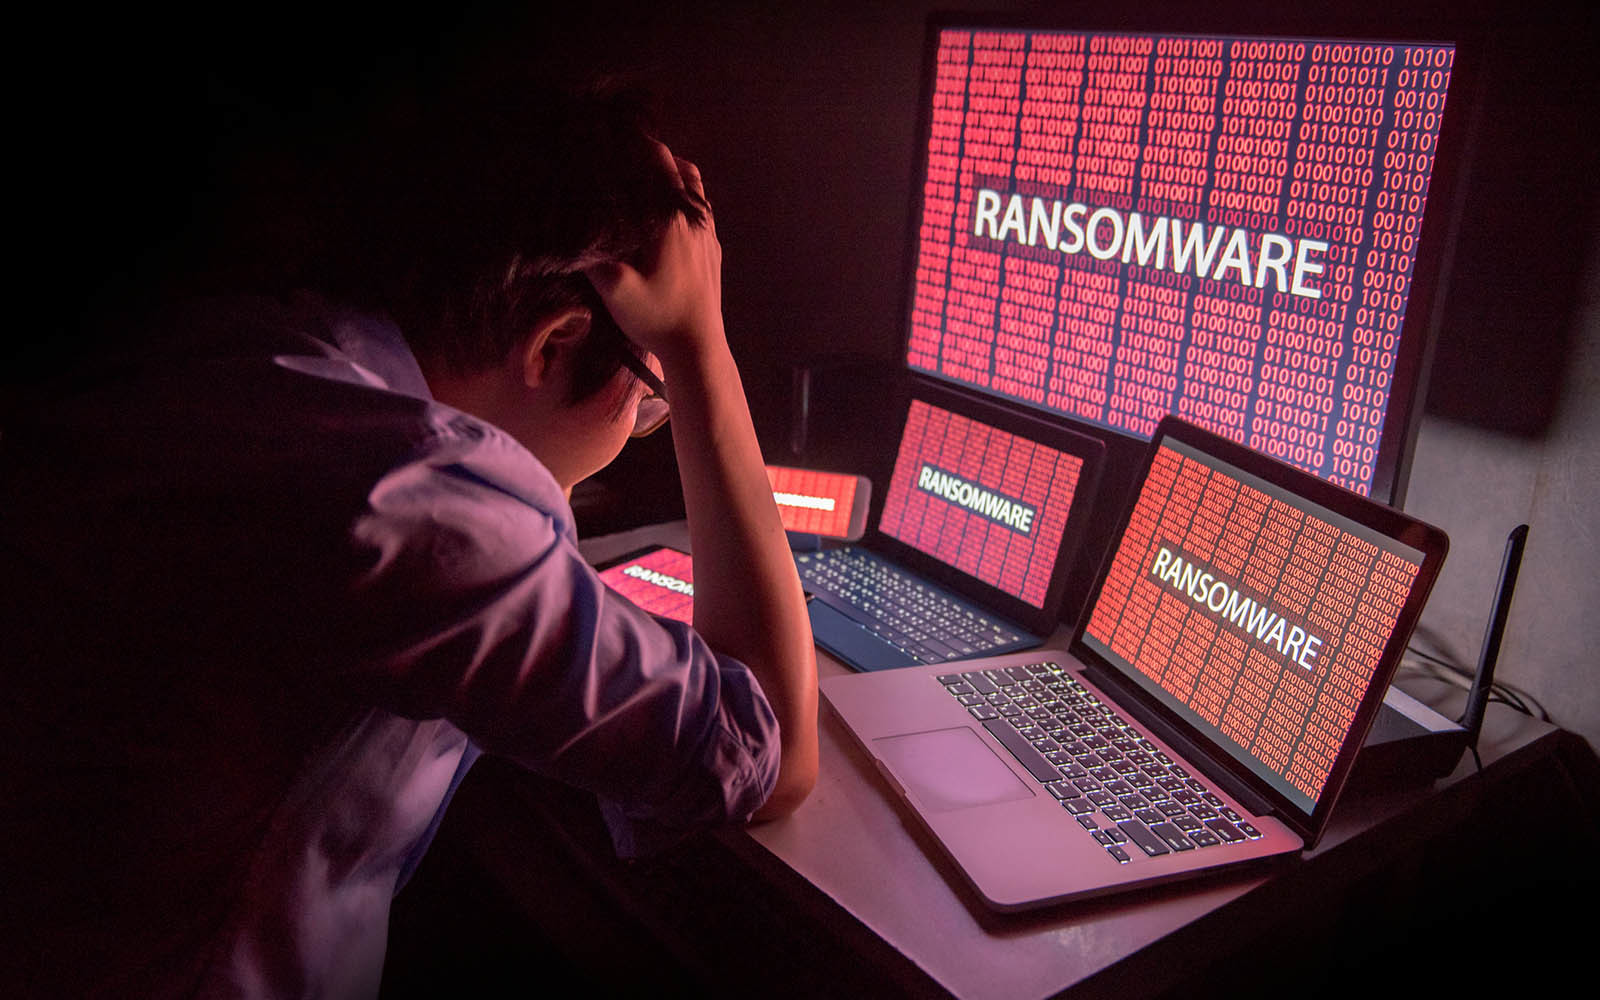 Phát hiện ransomware làm giả bản cập nhật hệ điều hành Windows trên các thiết bị